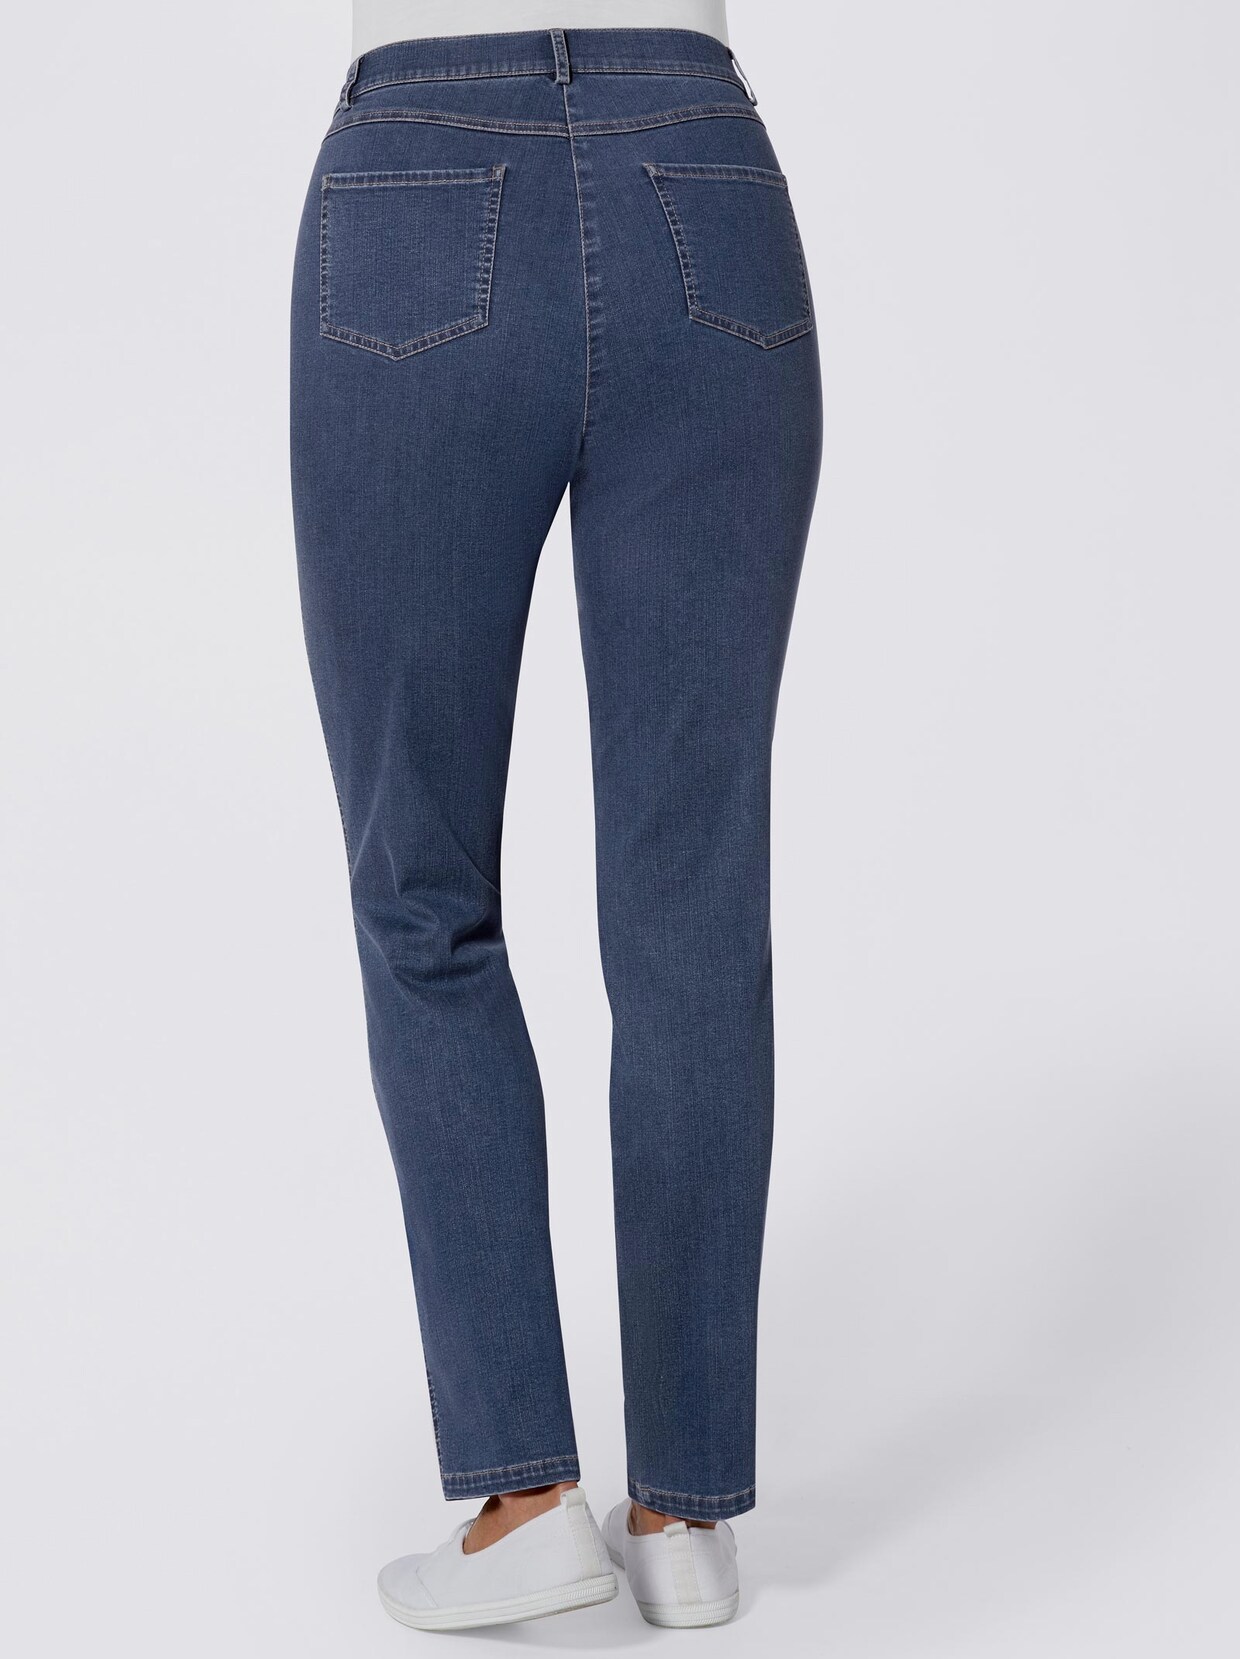 Cosma jeans - blue-stonewashed